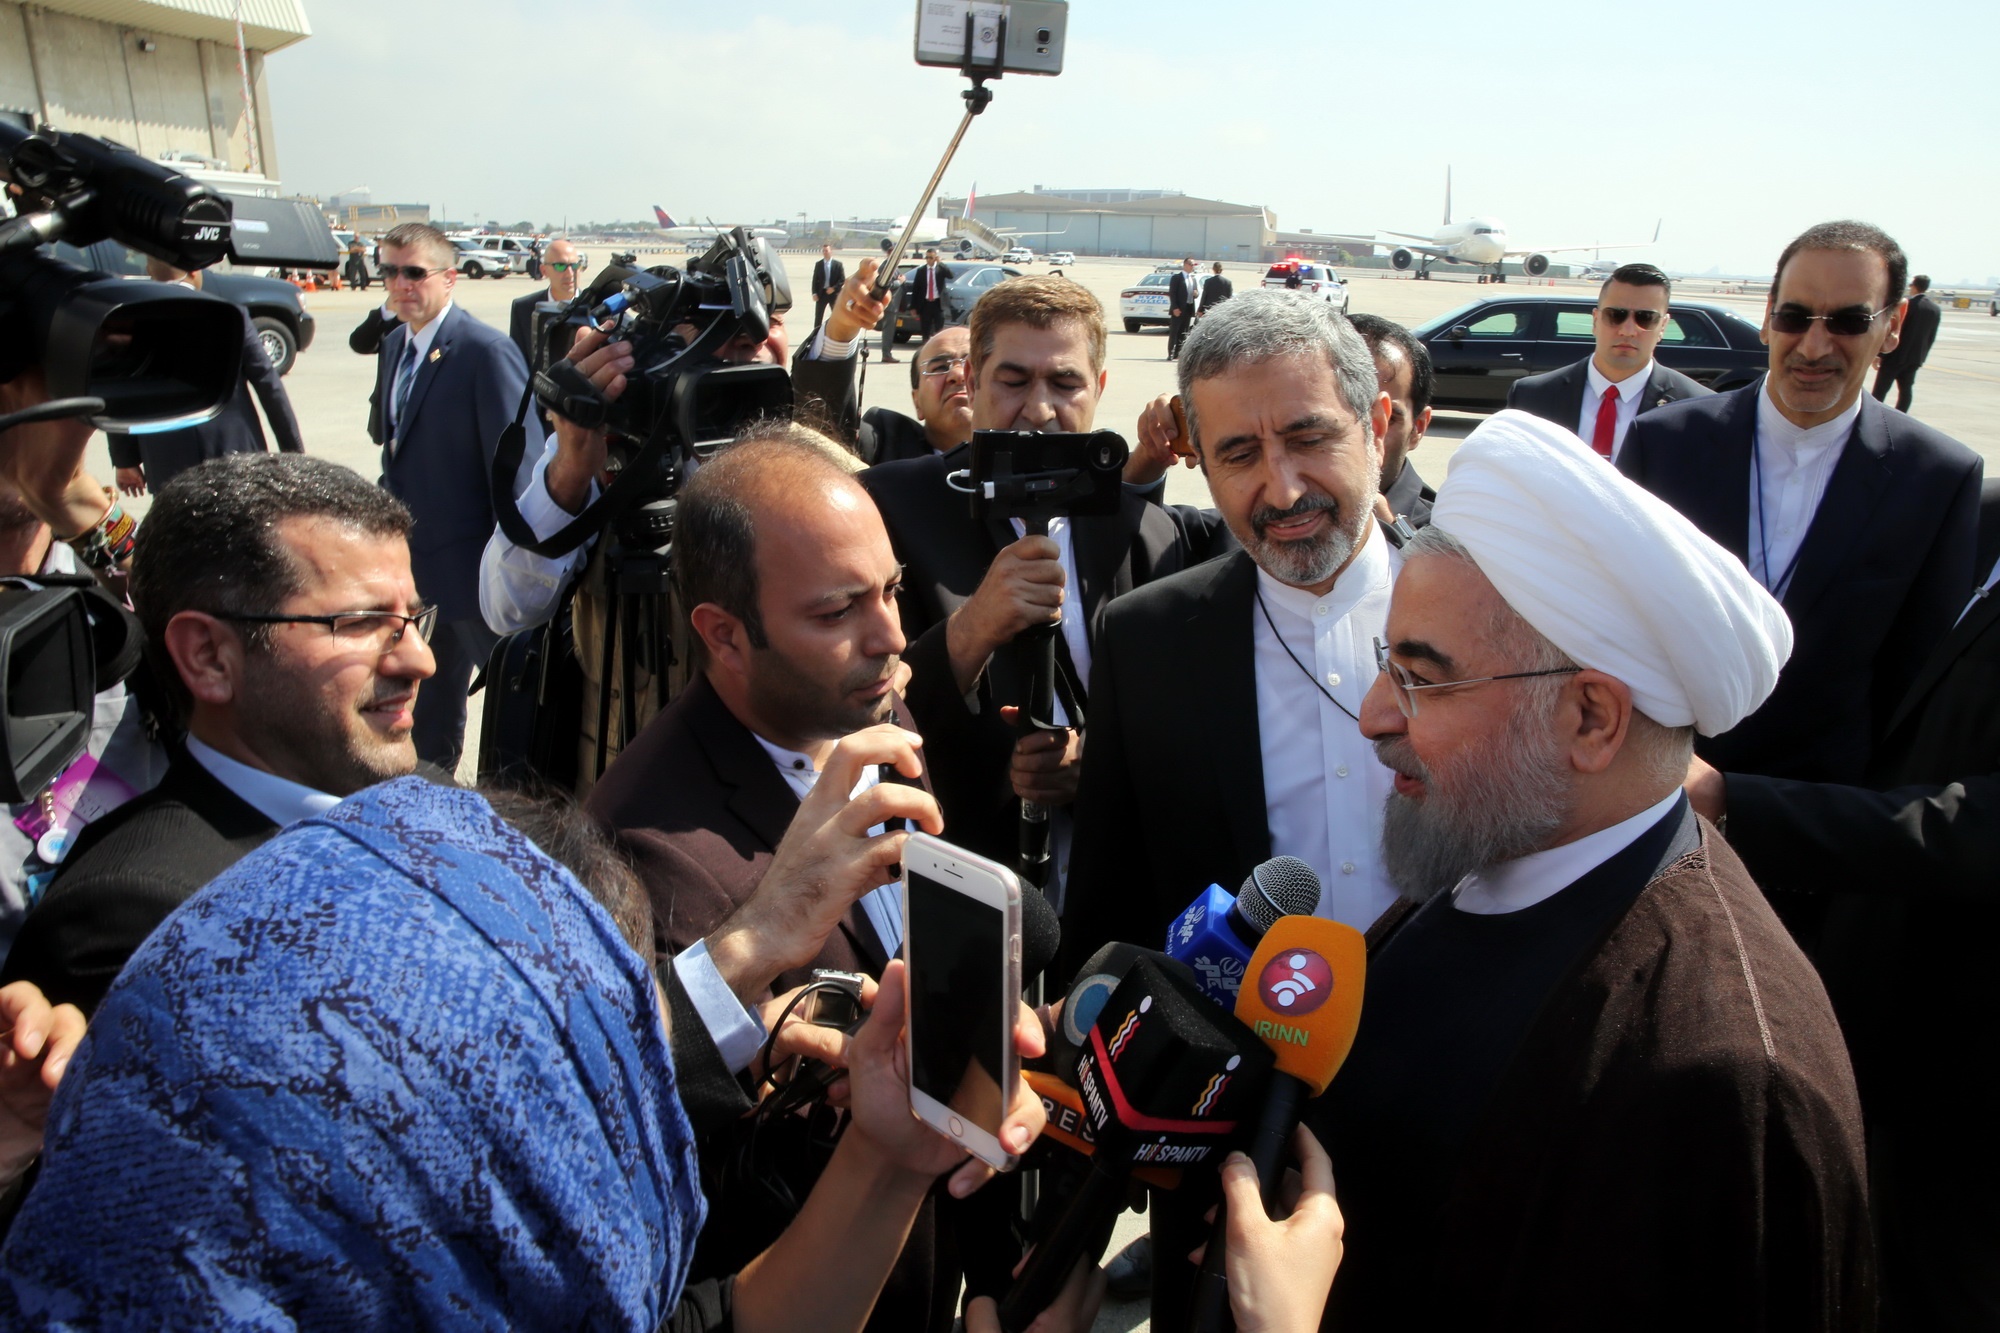 روحانی: استراتژی جمهوری اسلامی تعامل گسترده با جهان است/ شاهد شرایط دشواری در میانمار هستیم